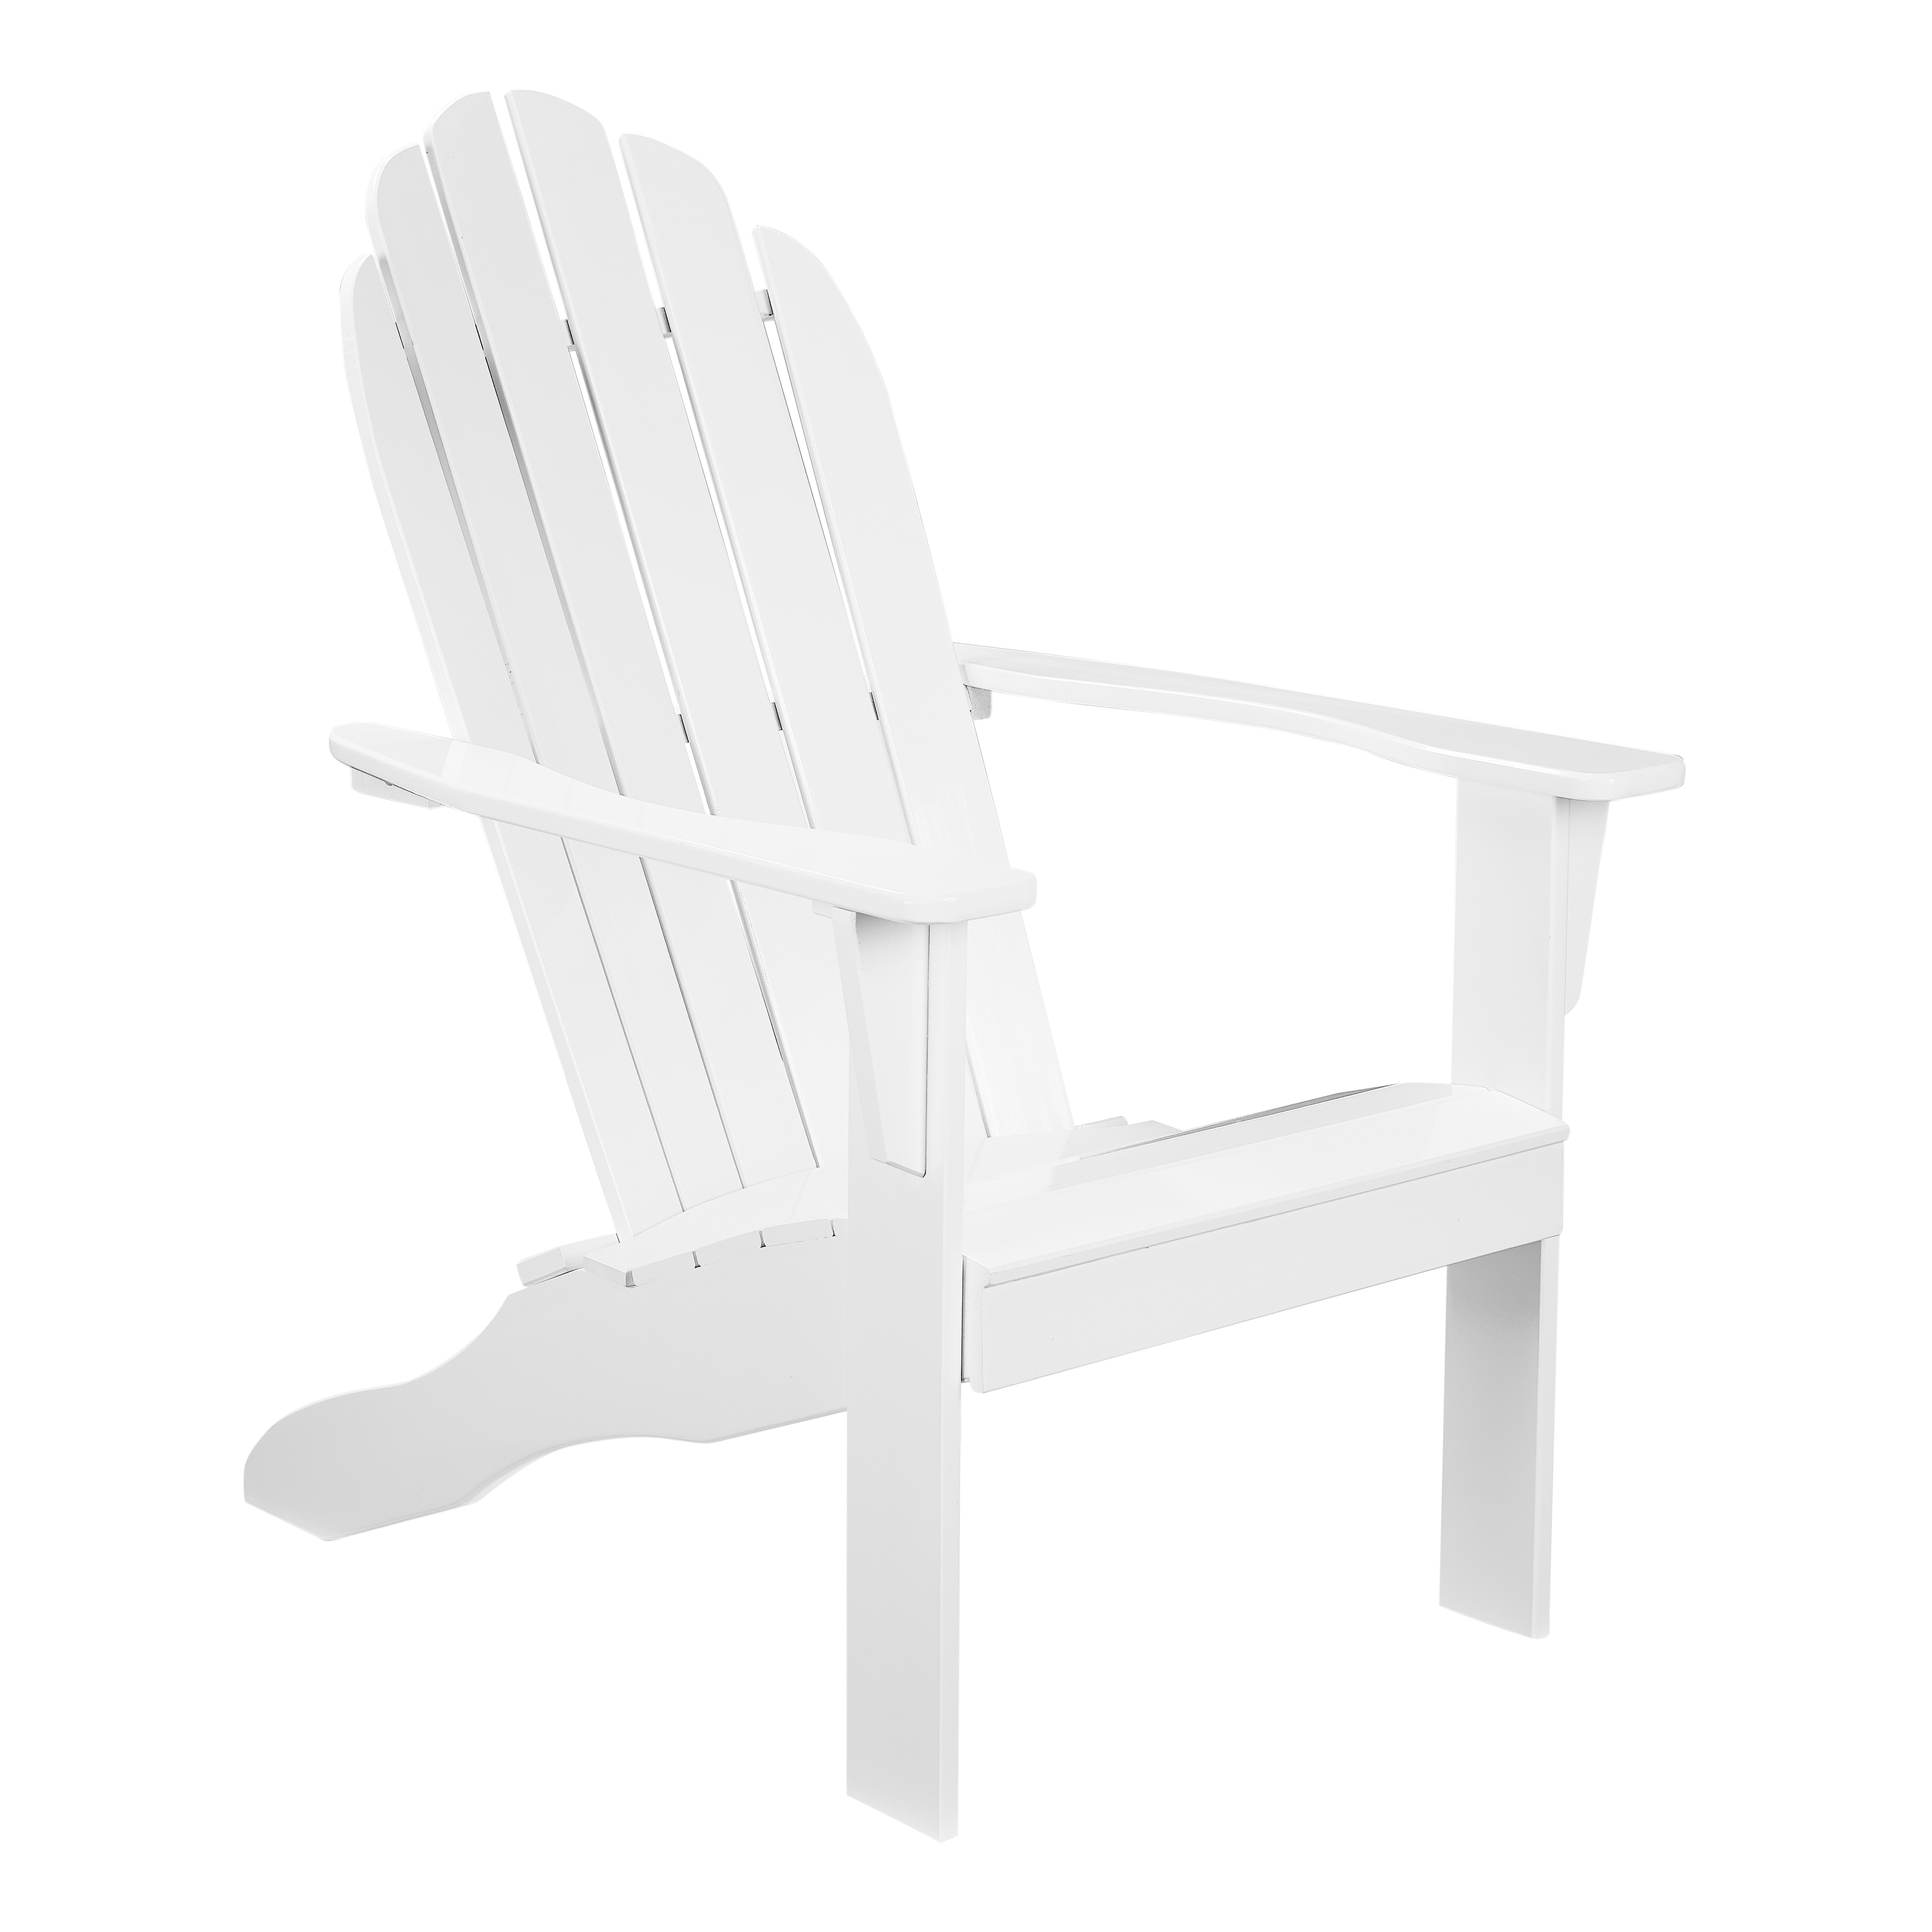 White wood Adirondack chair